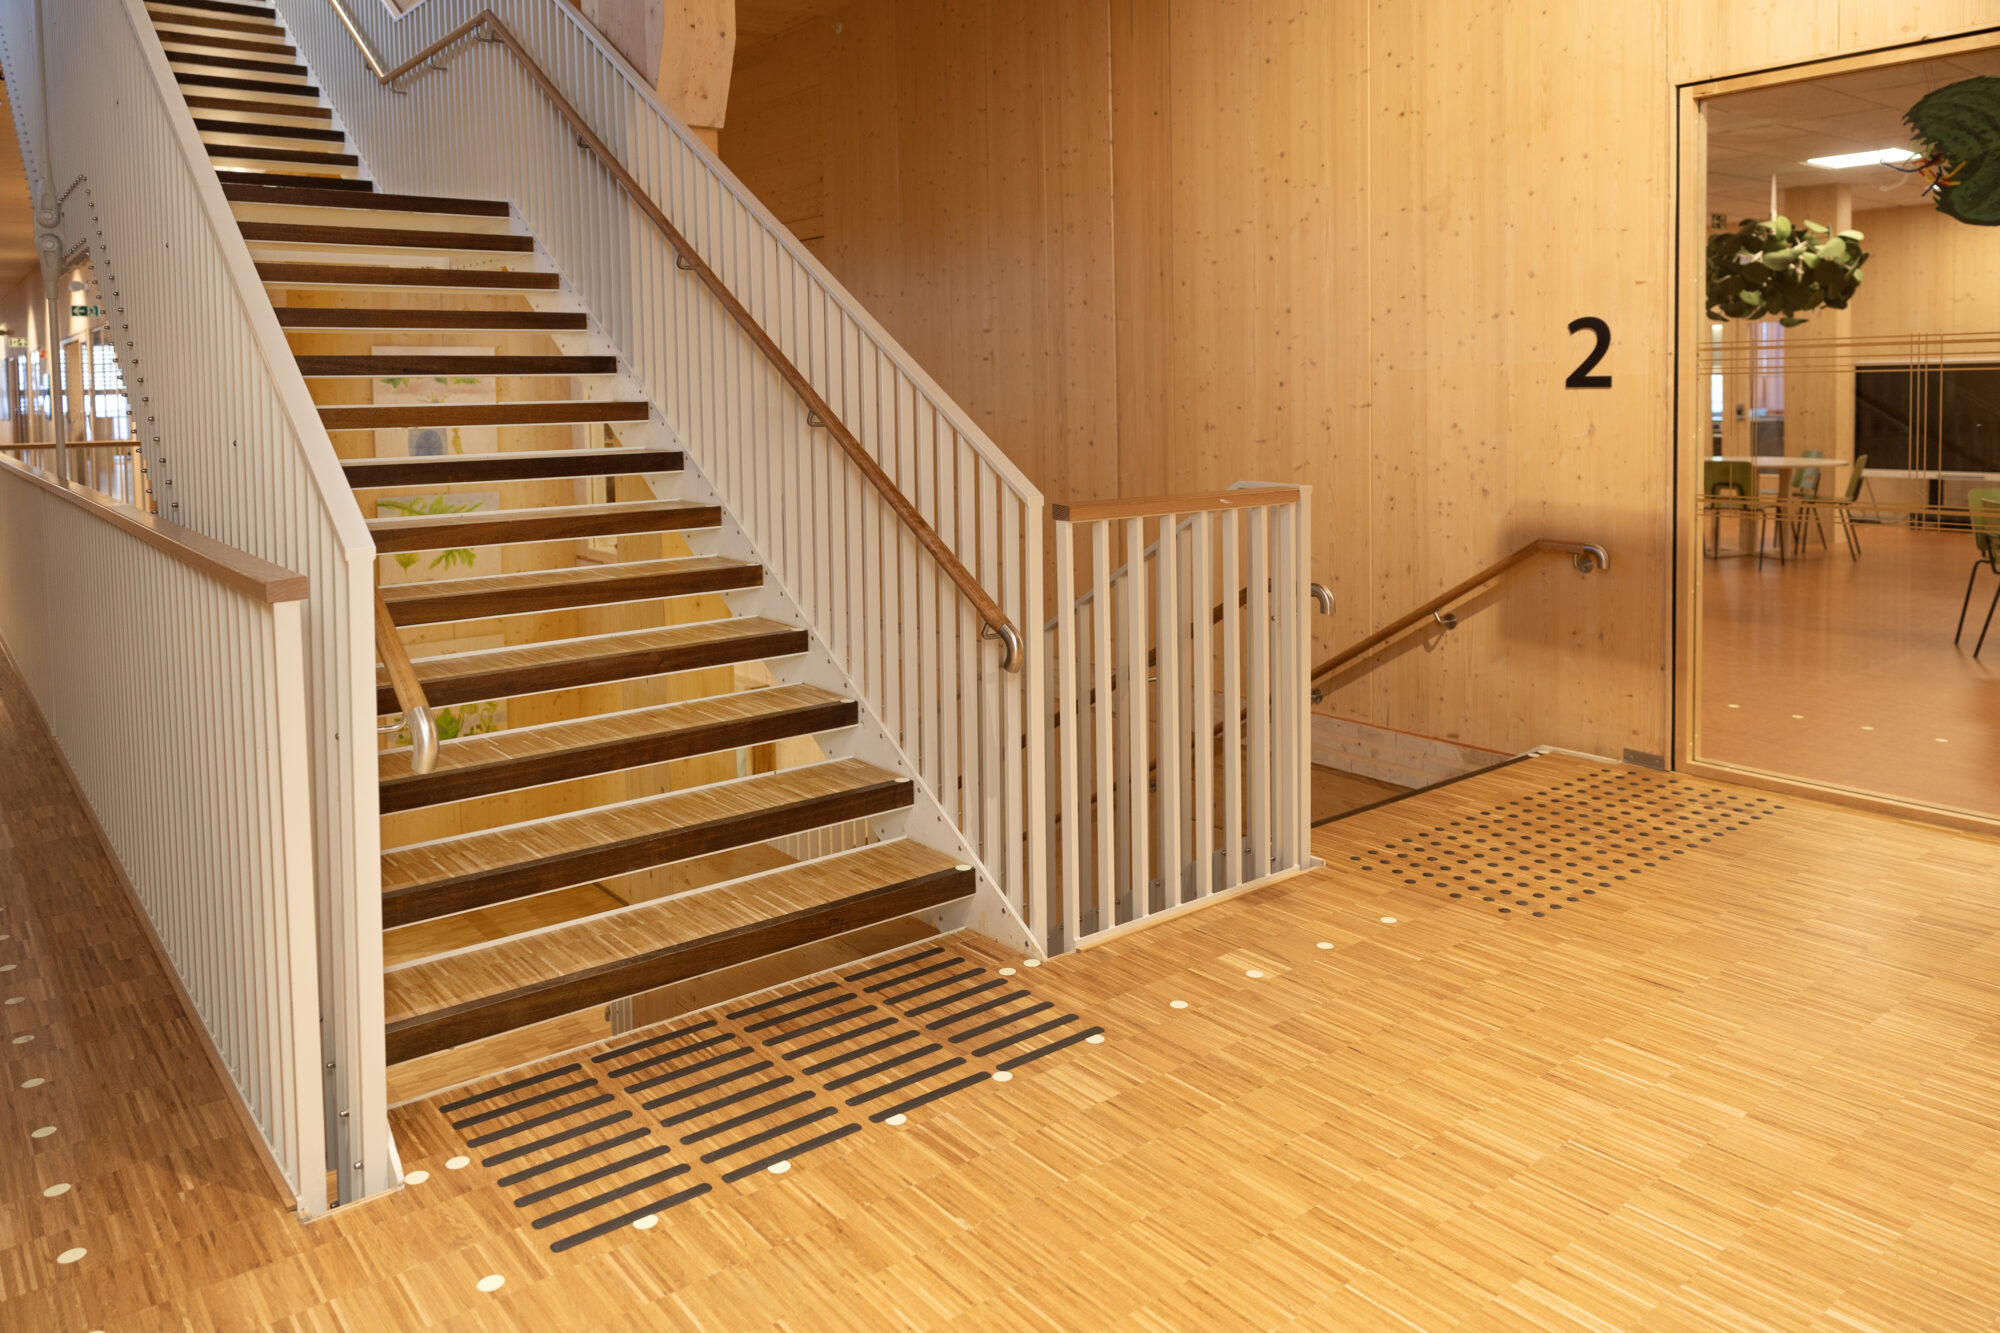 Taktile element i trapp, utført av Plenum ved Huseby skole i Trondheim.